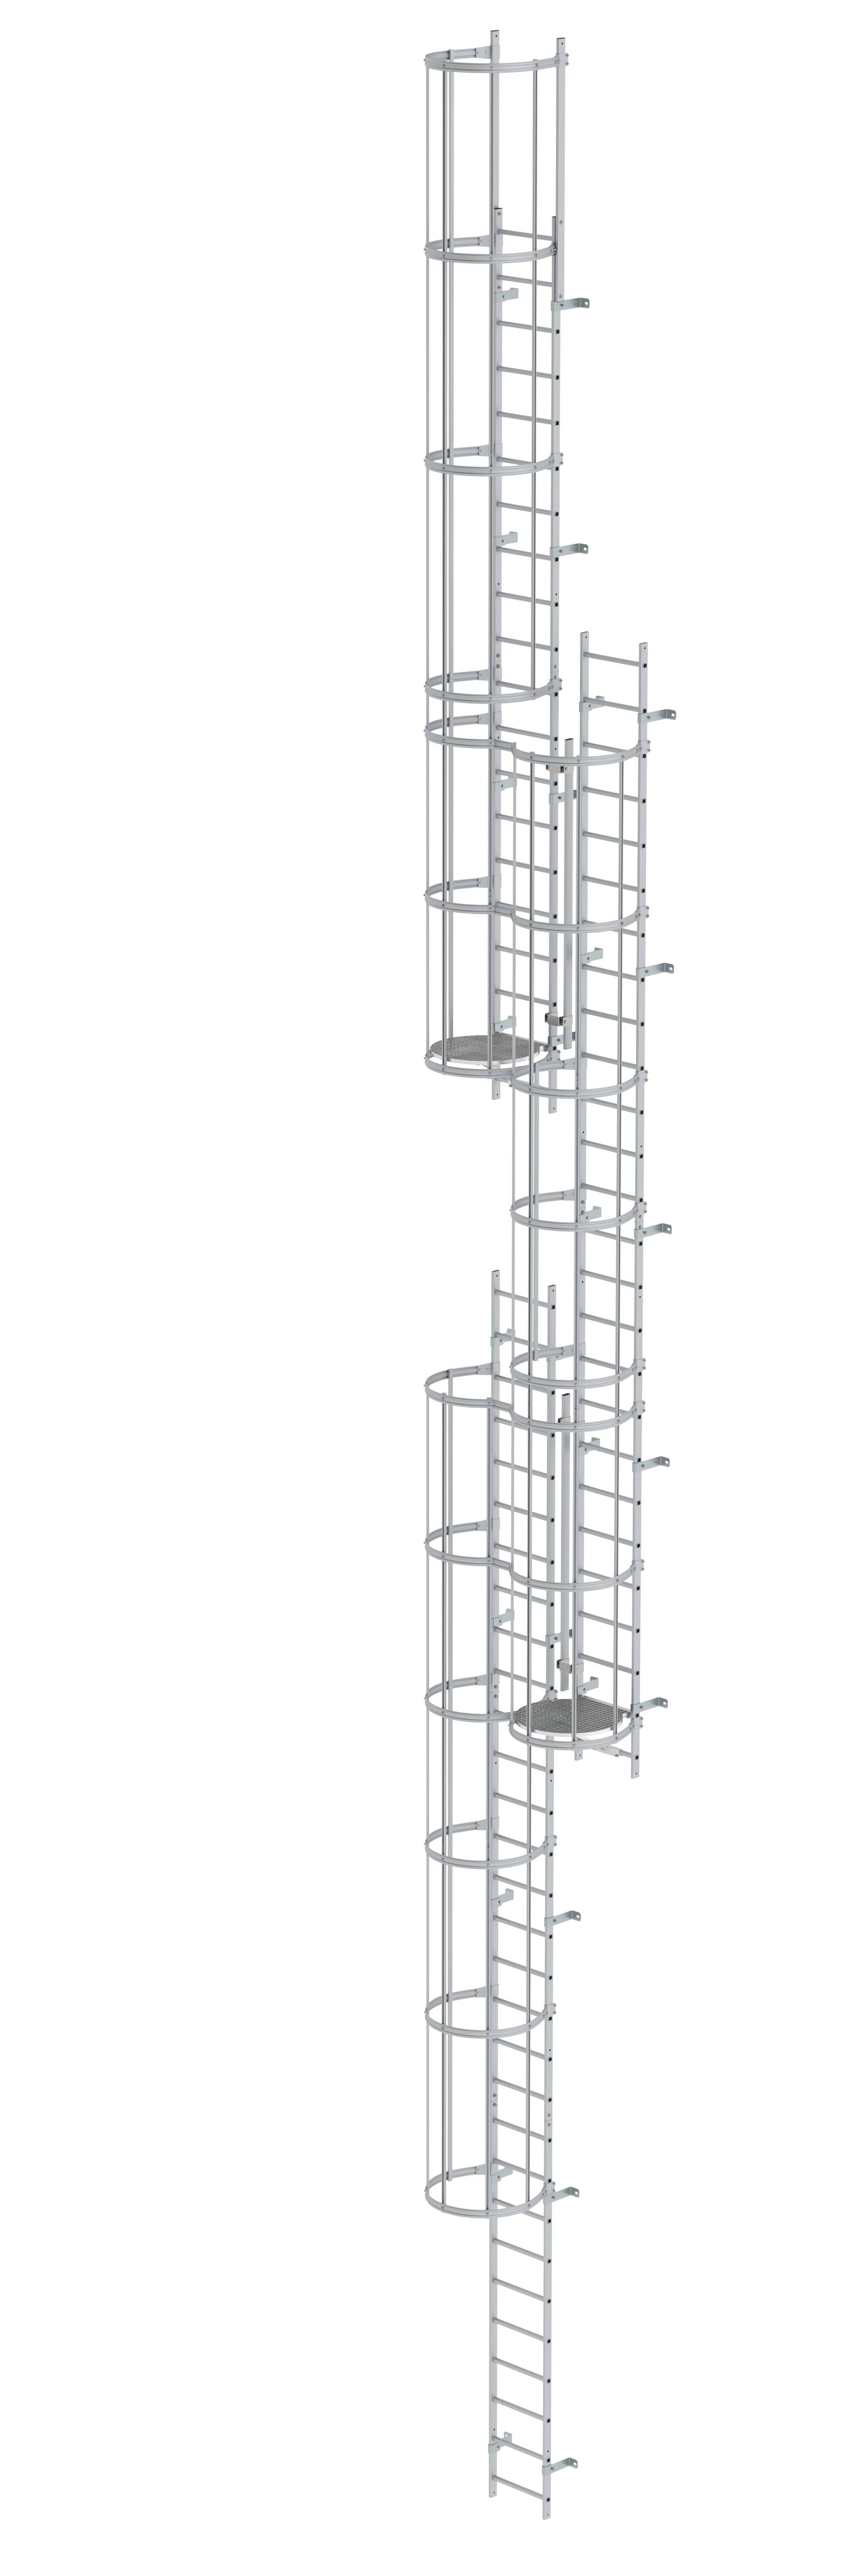 Mehrzügige Steigleiter mit Rückenschutz (Maschinen) Aluminium blank 16,32m